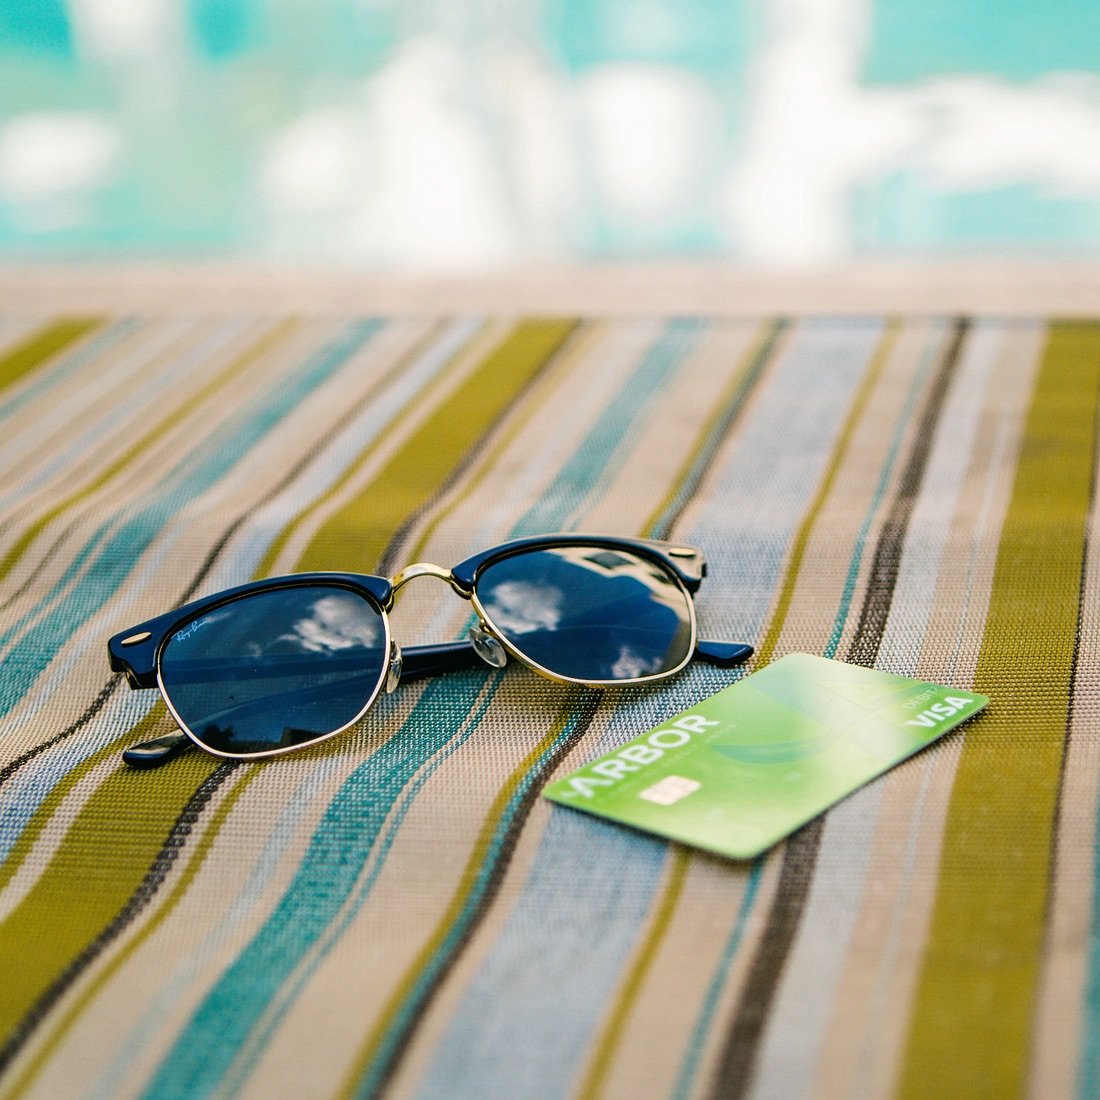 Sunglasses and an Arbor debit card on a beach towel.